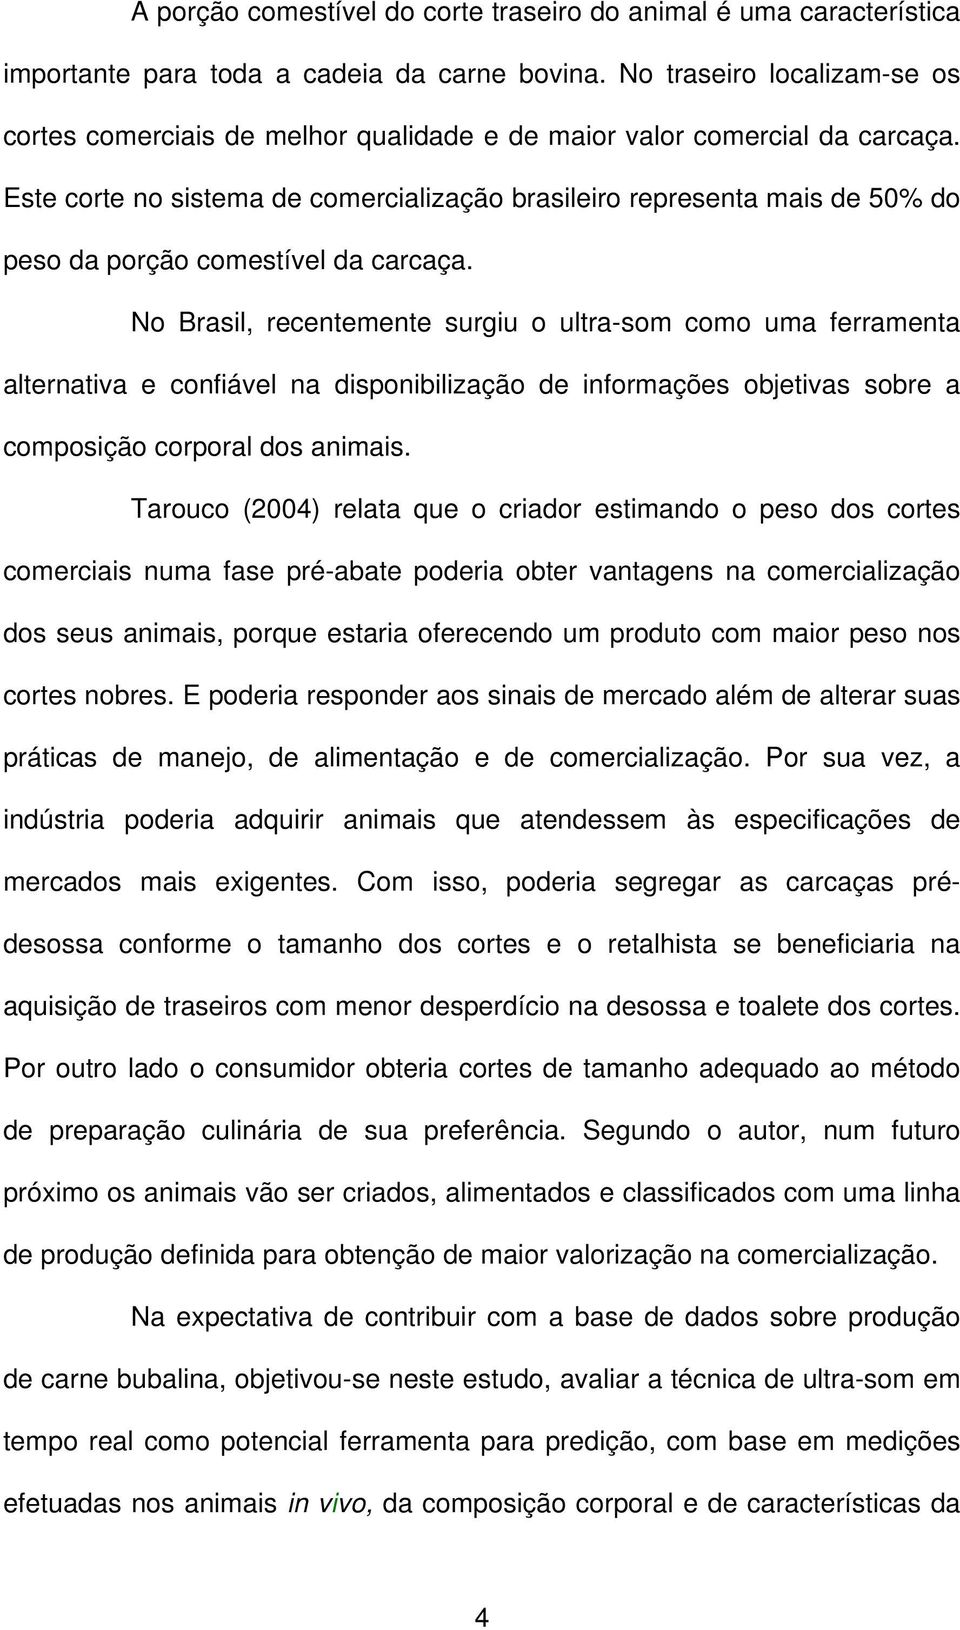 Este corte no sistema de comercialização brasileiro representa mais de 50% do peso da porção comestível da carcaça.